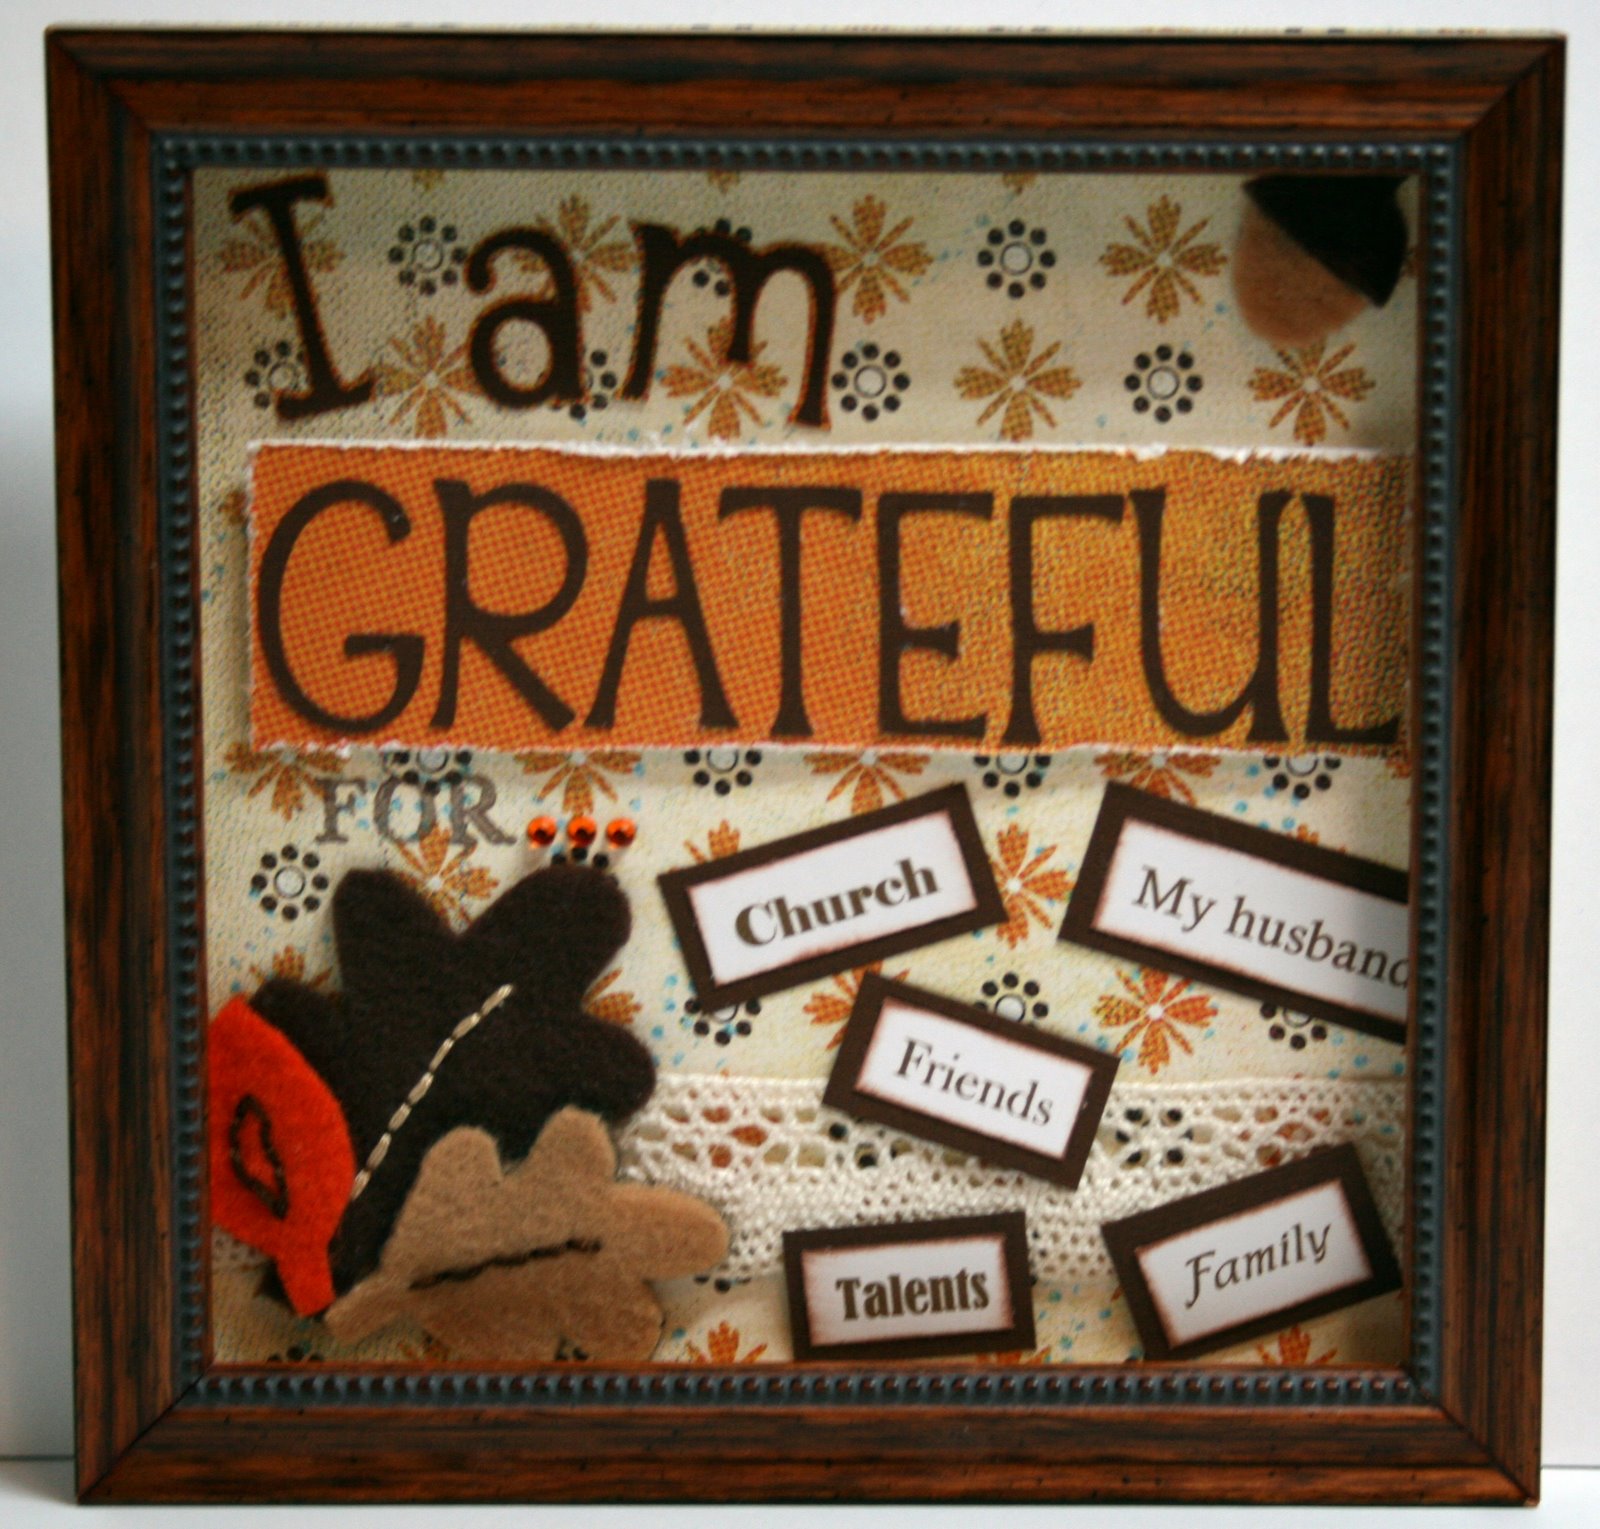 I Am Grateful For…